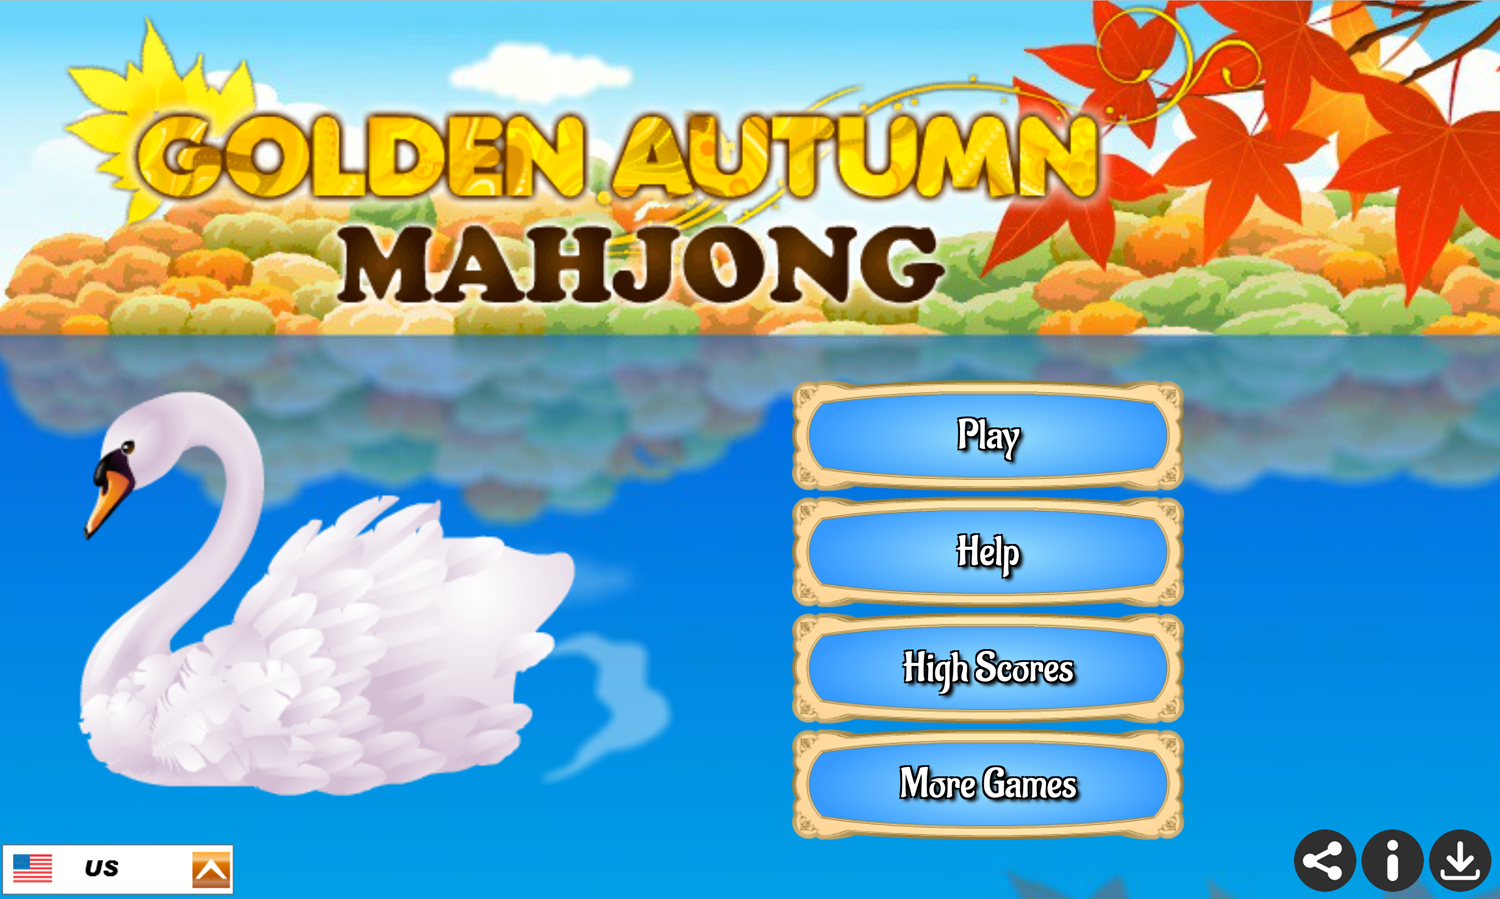 Golden Autumn Mahjong Game Welcome Screen Screenshot.